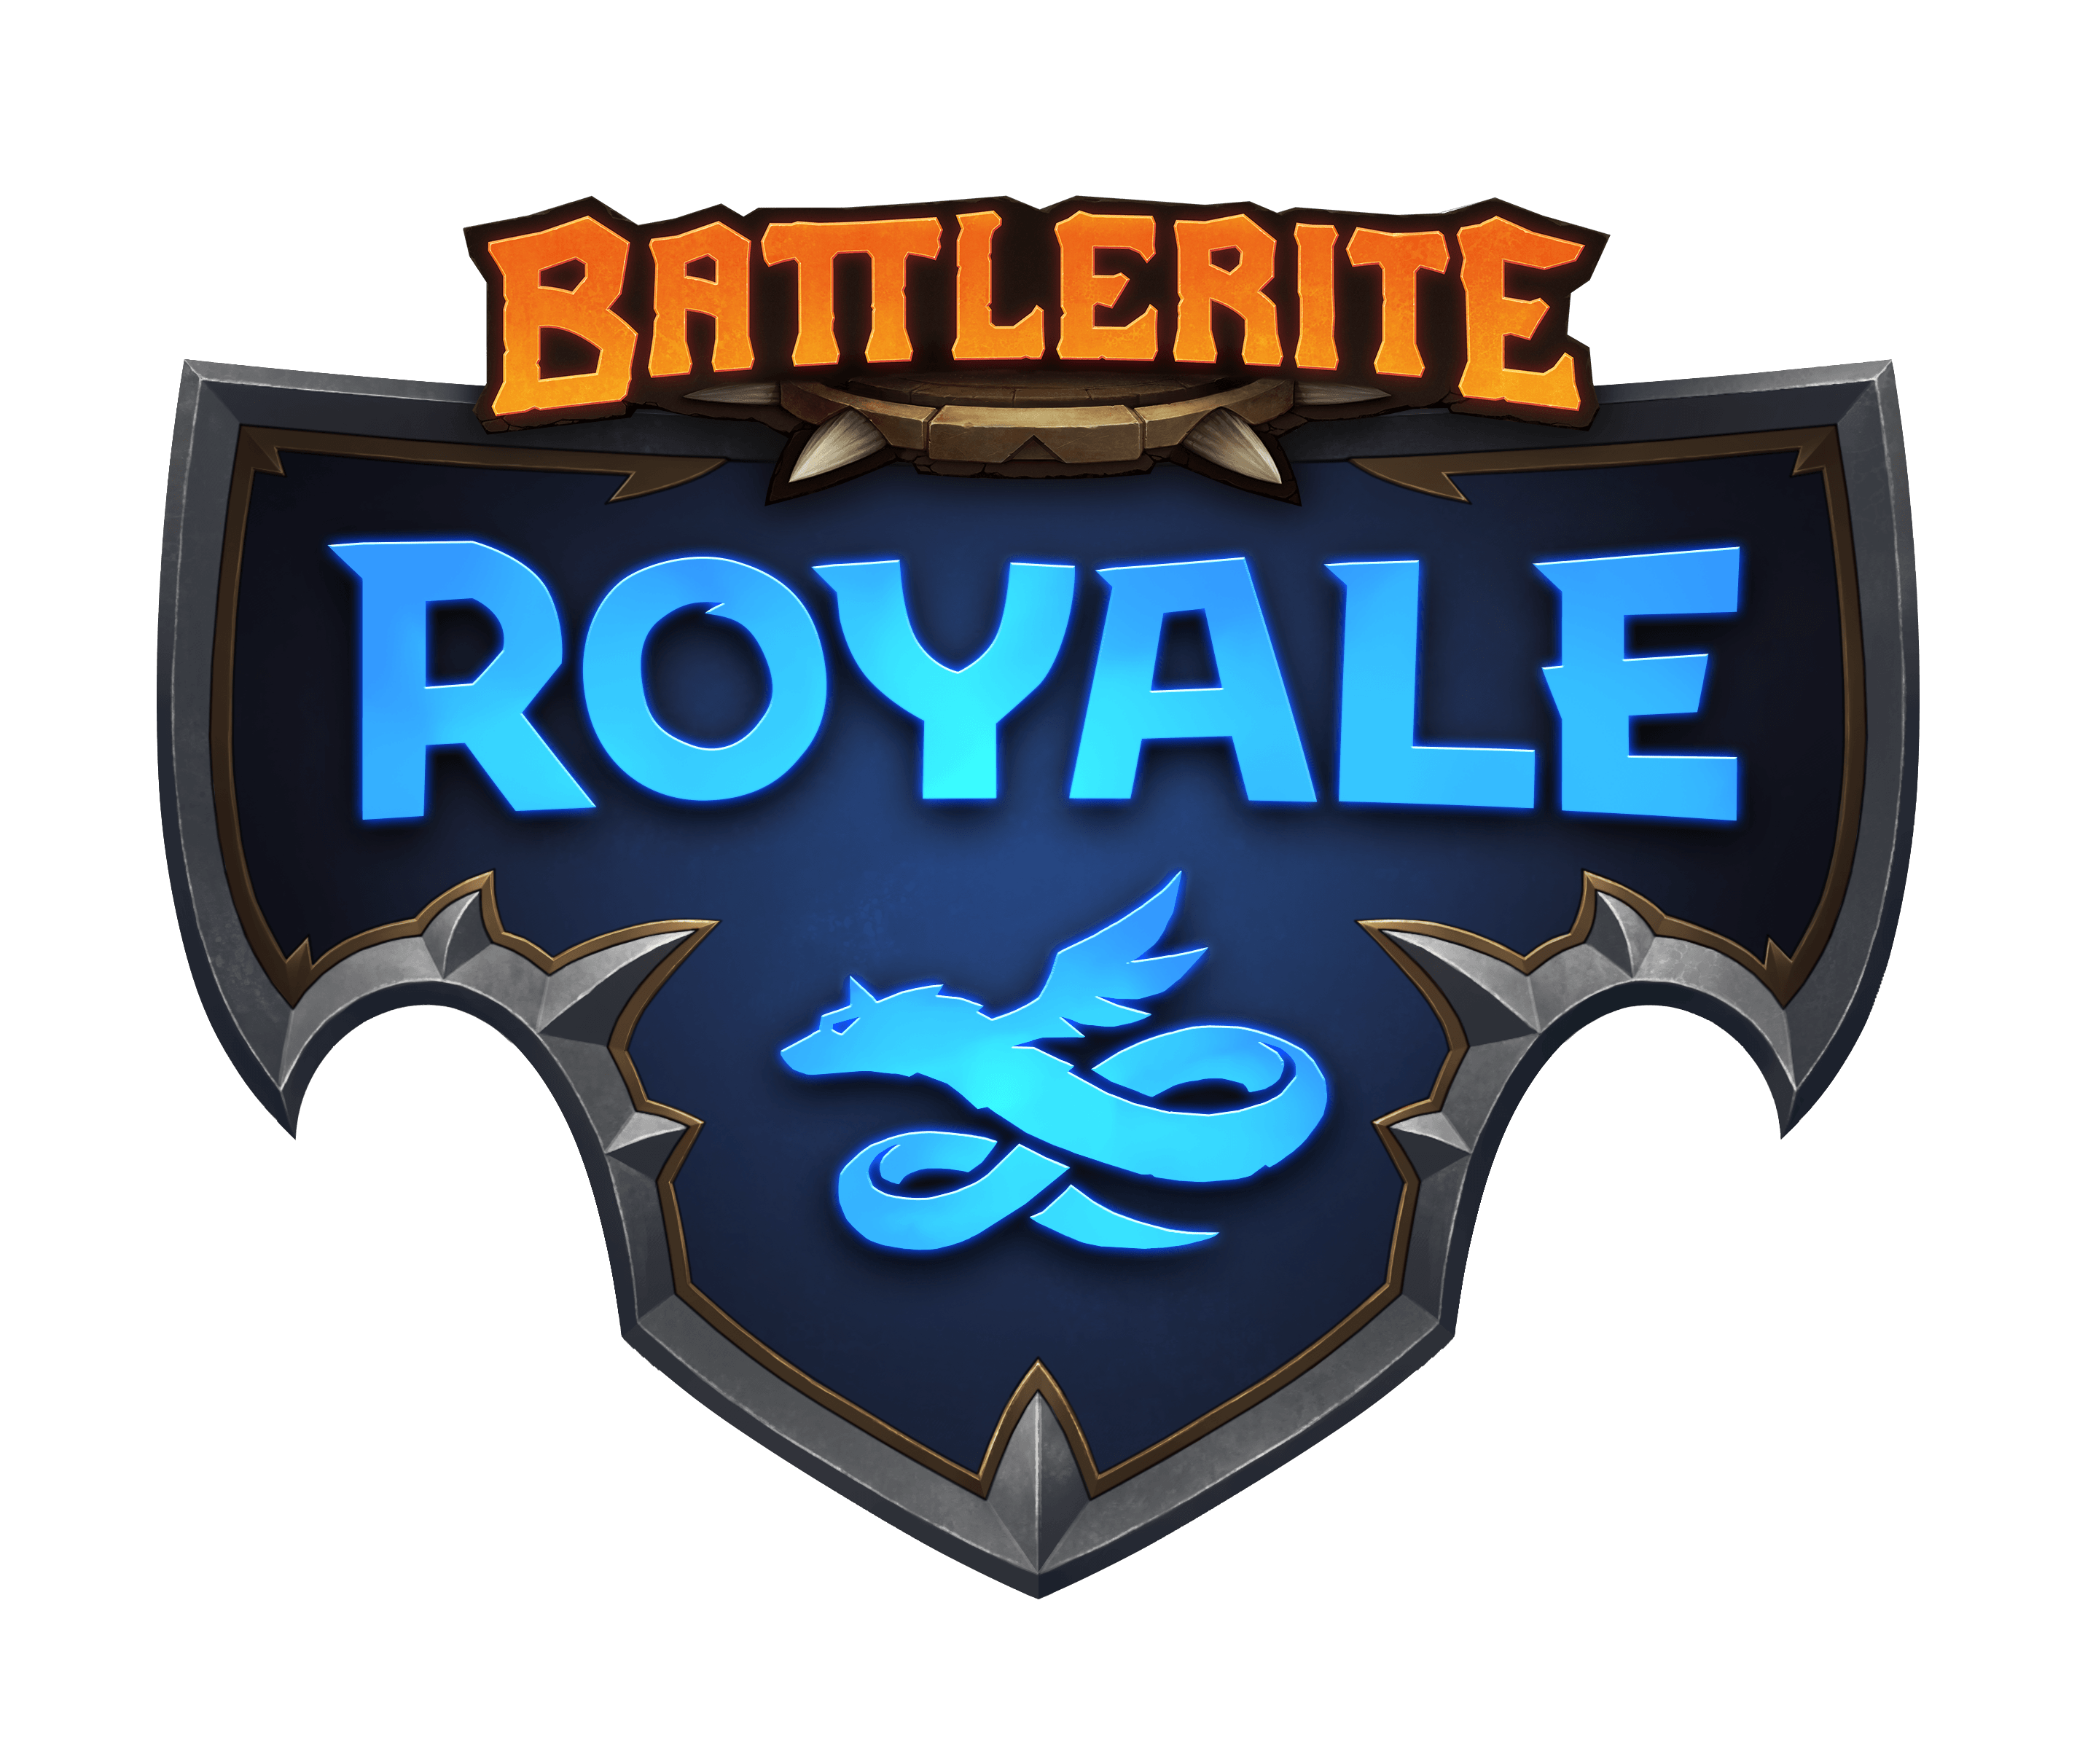 Battle Royale Logo - Battlerite